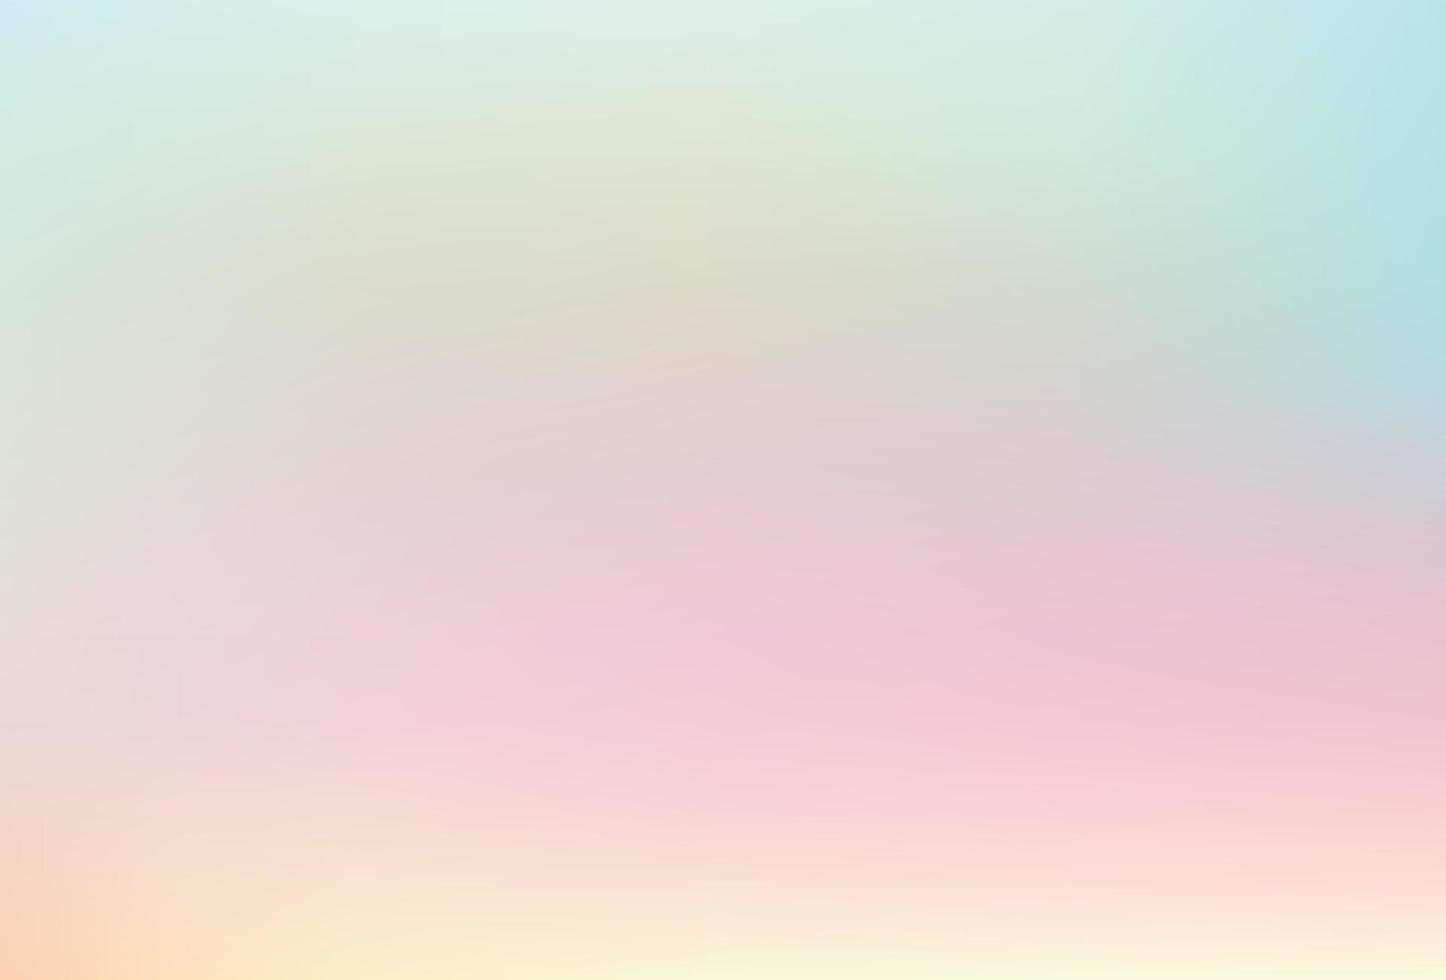 Rainbow unicorn backdrop. Rainbow unicorn background vector